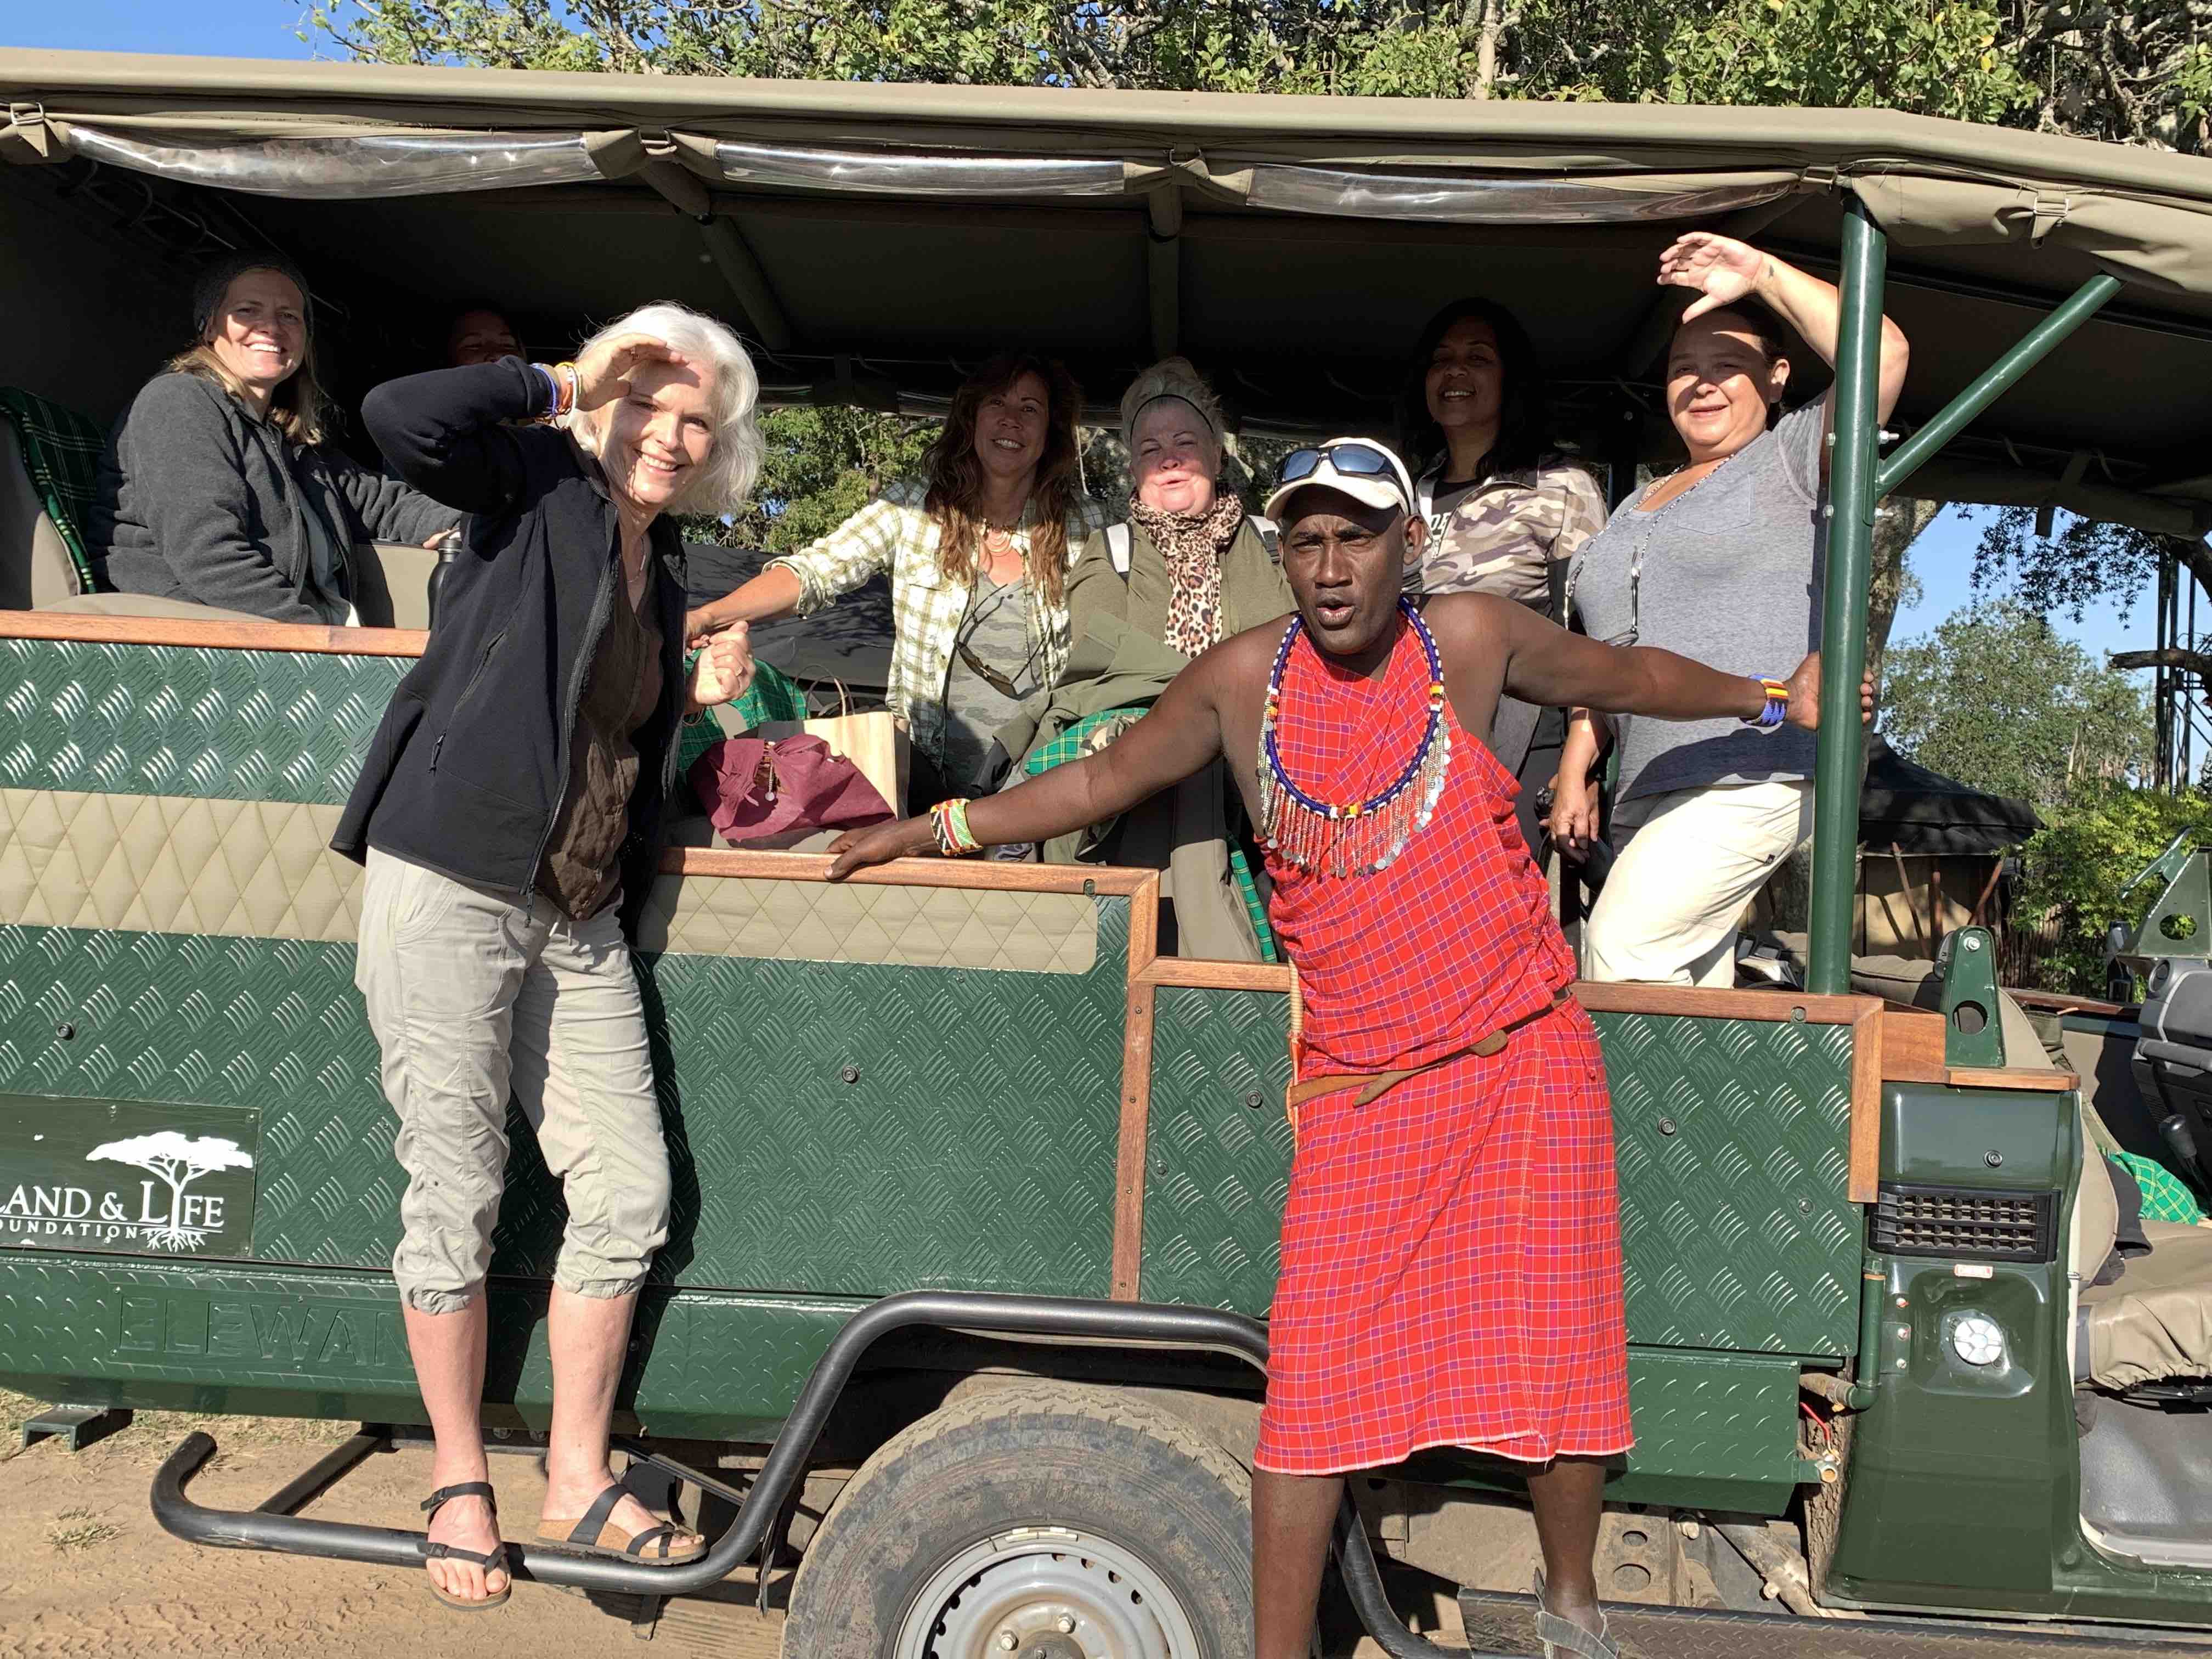 On safari in the Masai Mara with Lori Robinson from Saving Wild